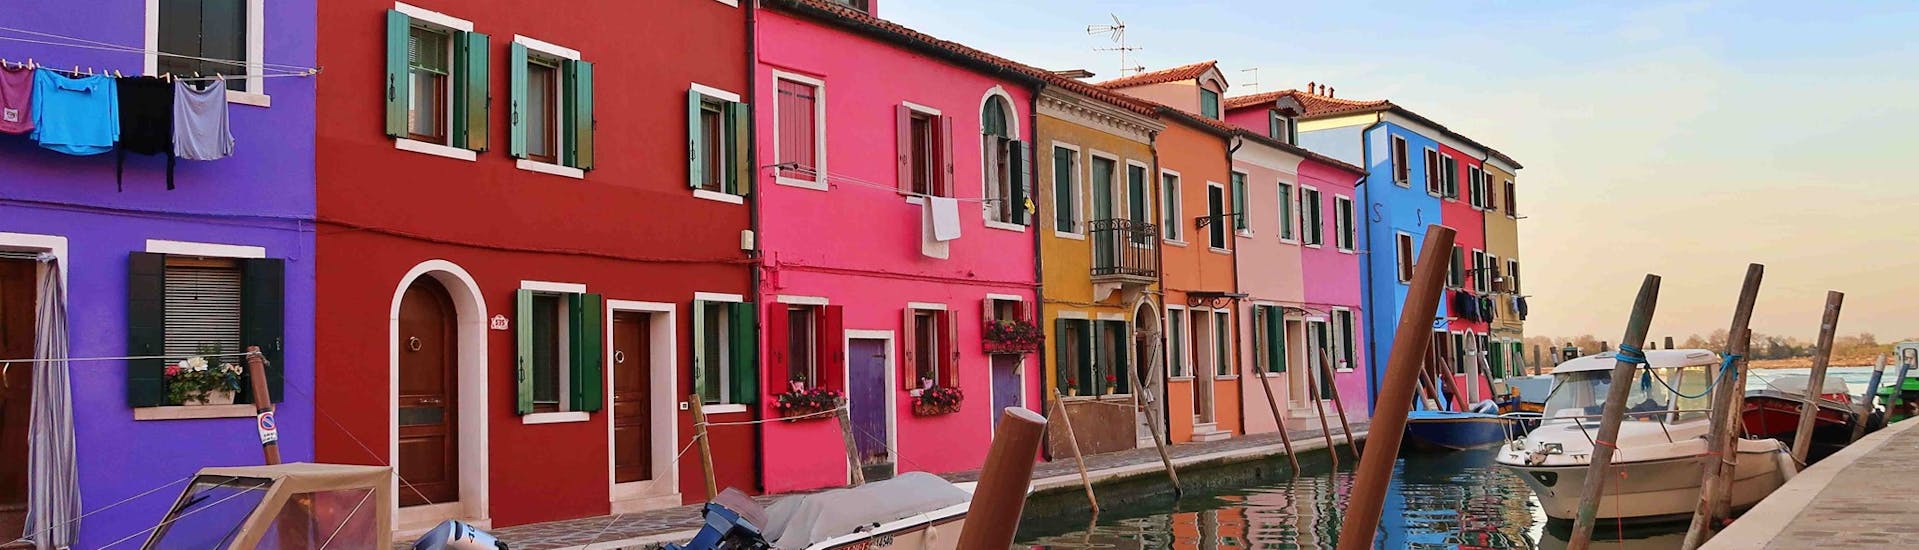 Una foto delle casette colorate di Burano durante la Gita in barca da Punta Sabbioni a Murano, Burano e Torcello con Il Doge di Venezia.